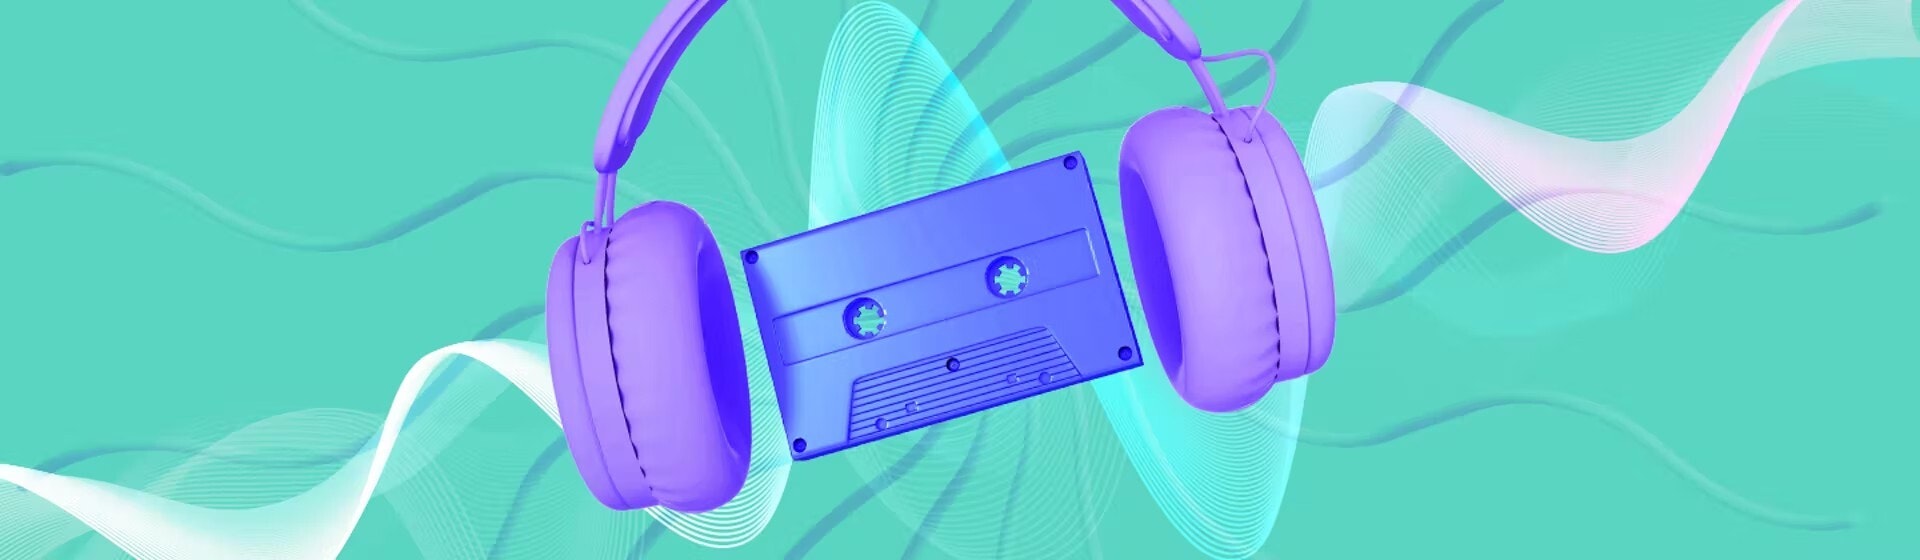 Descubra os melhores bancos de som gratuitos para download de músicas e efeitos